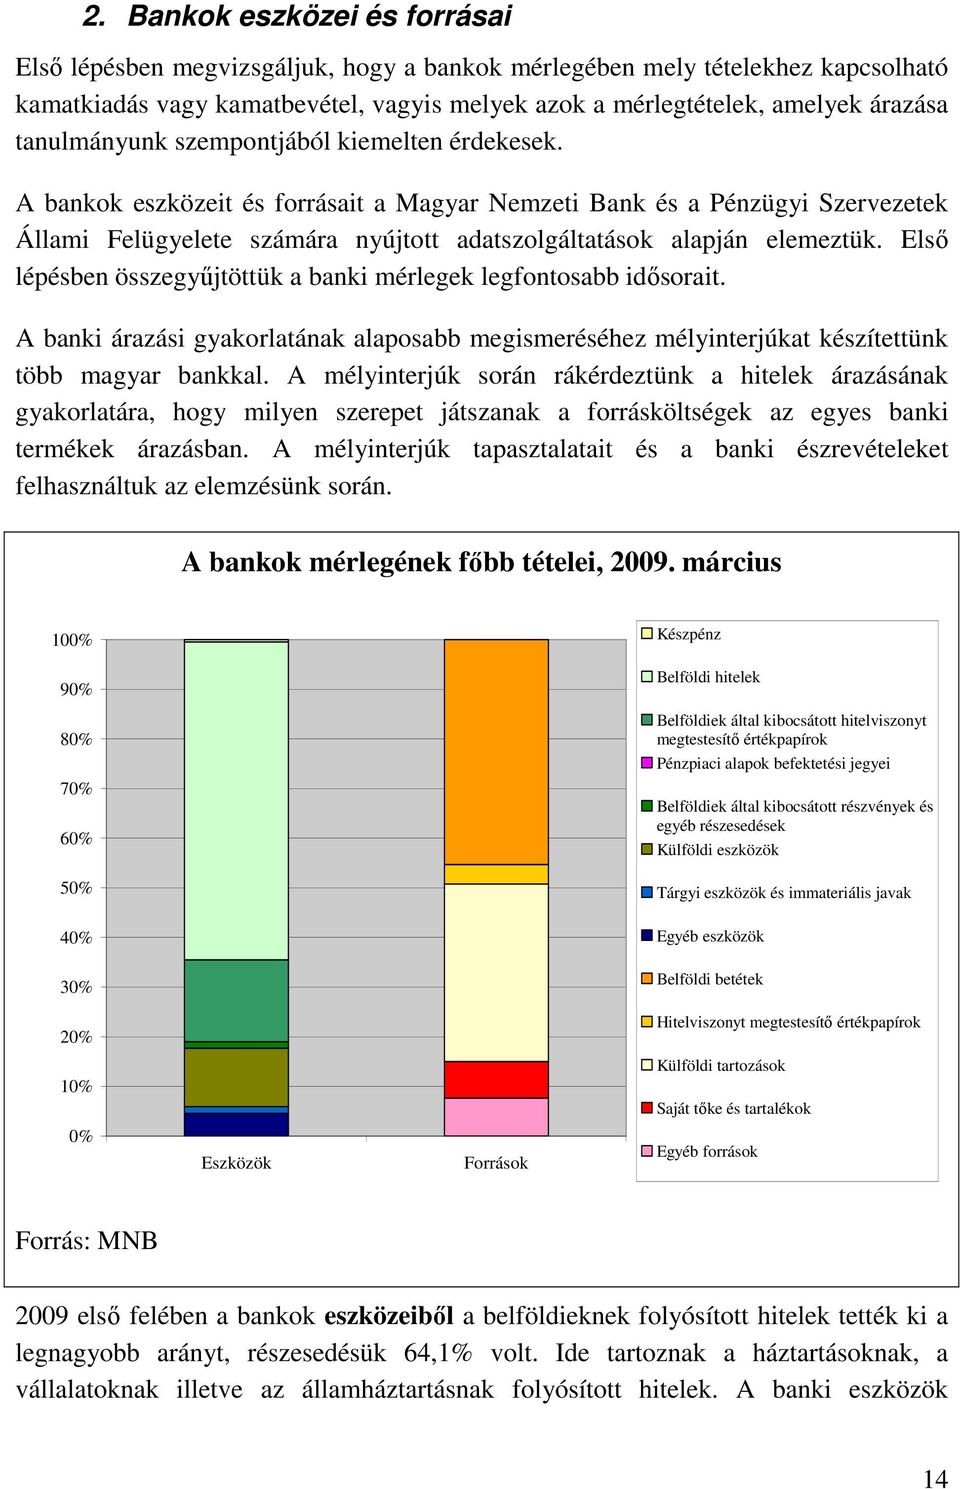 A bankok eszközeit és forrásait a Magyar Nemzeti Bank és a Pénzügyi Szervezetek Állami Felügyelete számára nyújtott adatszolgáltatások alapján elemeztük.